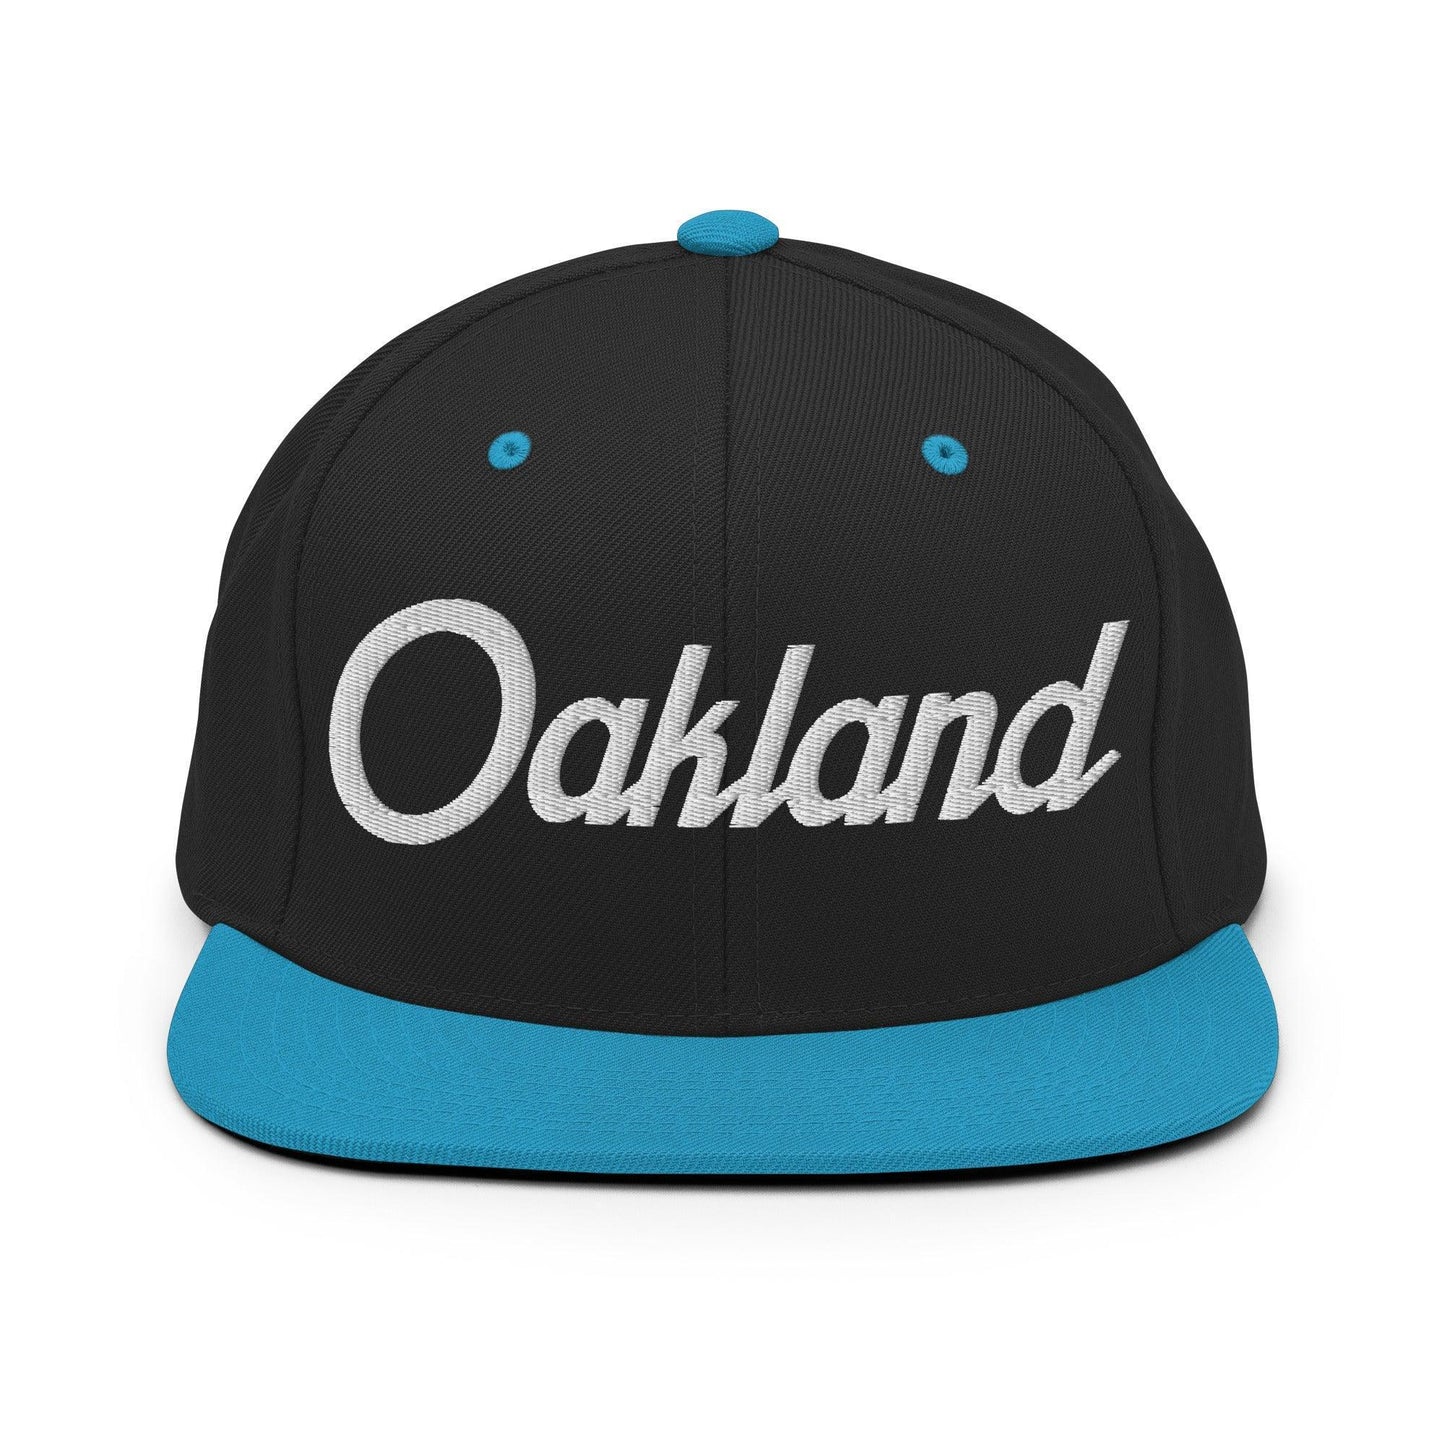 Oakland Script Snapback Hat Black/ Teal